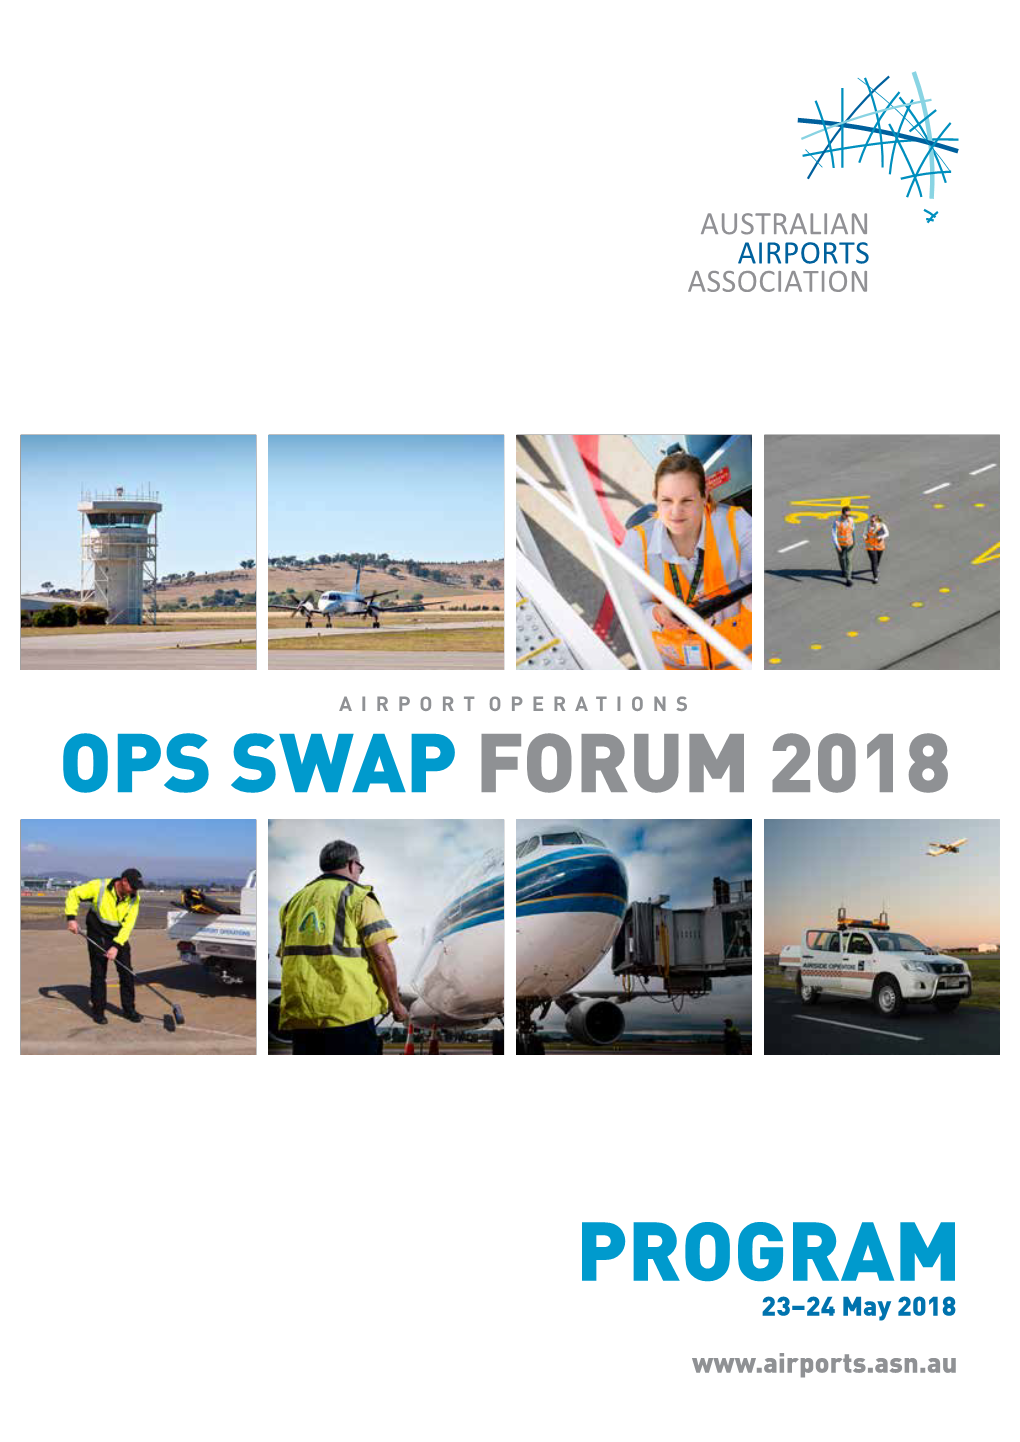 Program Ops Swap Forum 2018